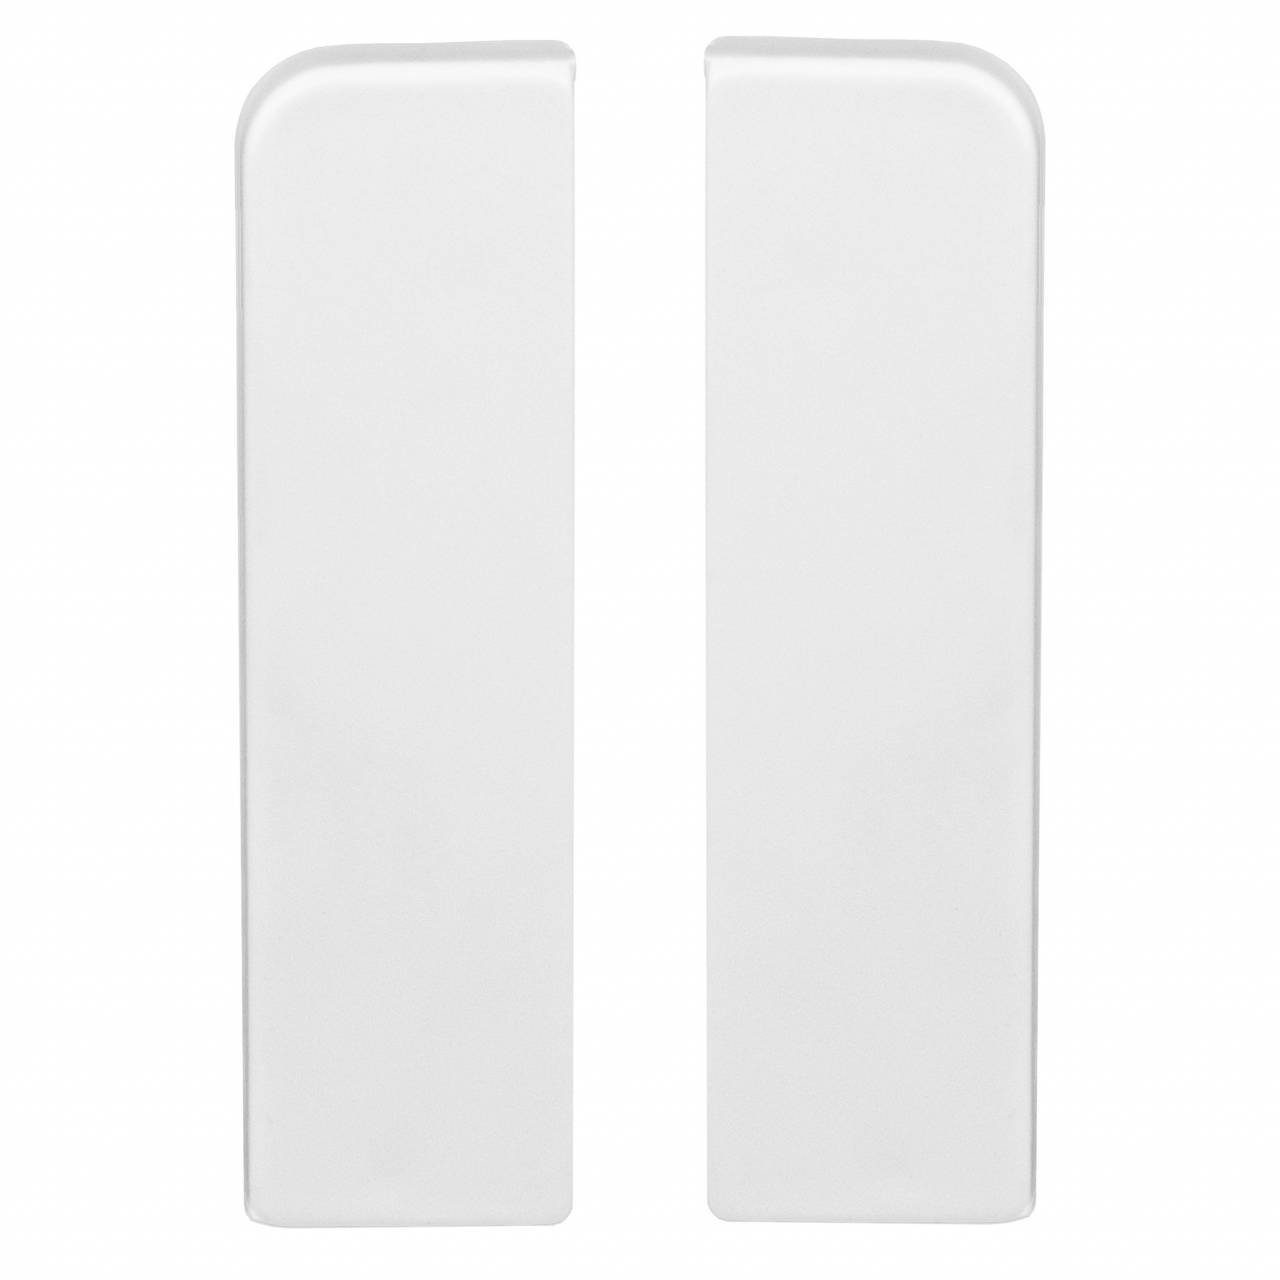 PROVISTON Sockelleisten-Endkappe Endkappen für MDF-Sockelleisten, 15 x 58 mm, Kunststoff, Weiß